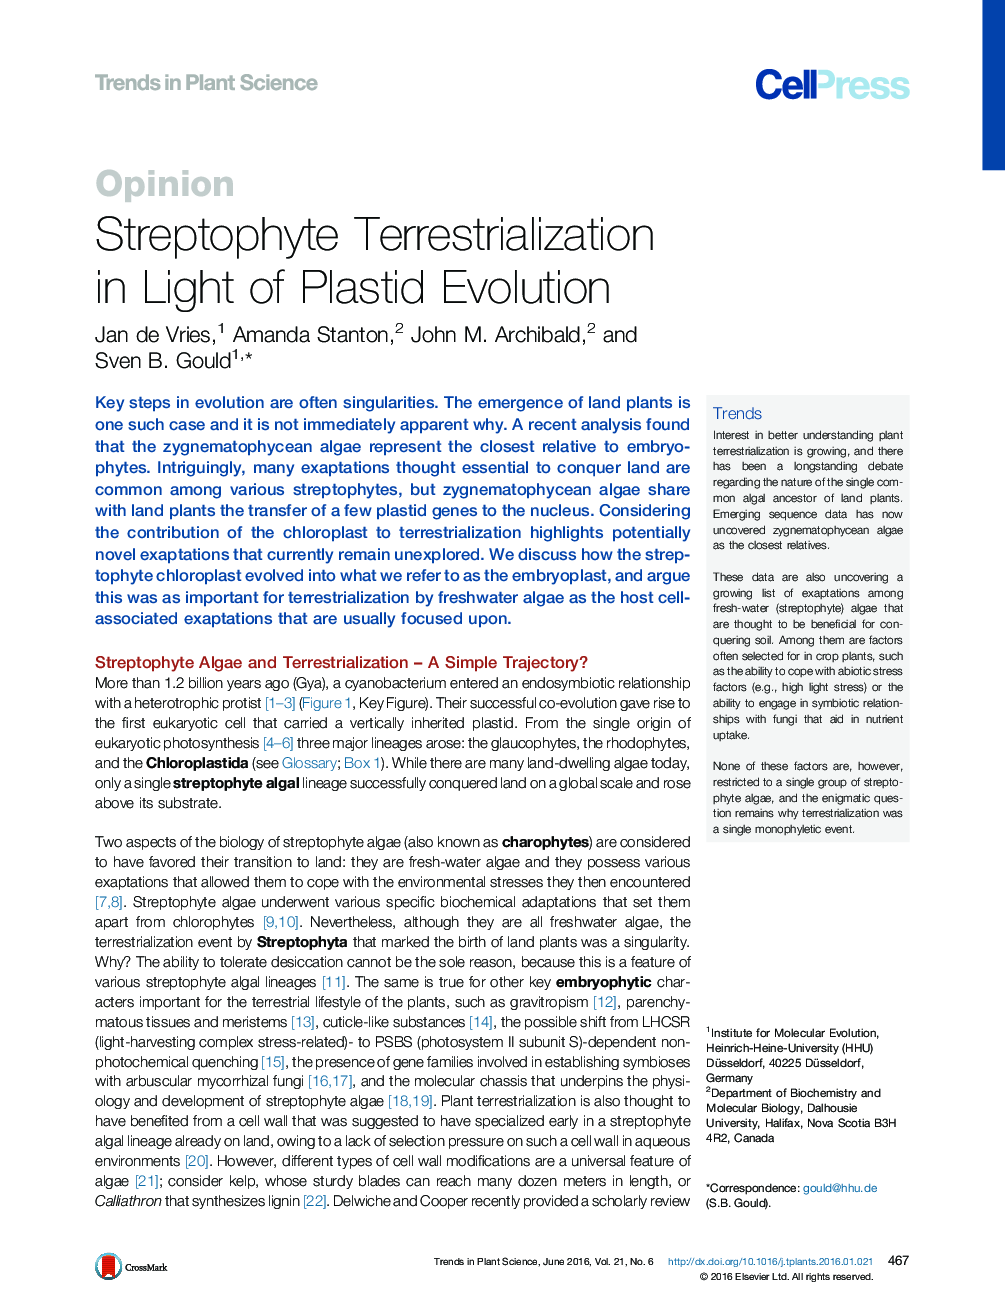 Streptophyte Terrestrialization in Light of Plastid Evolution